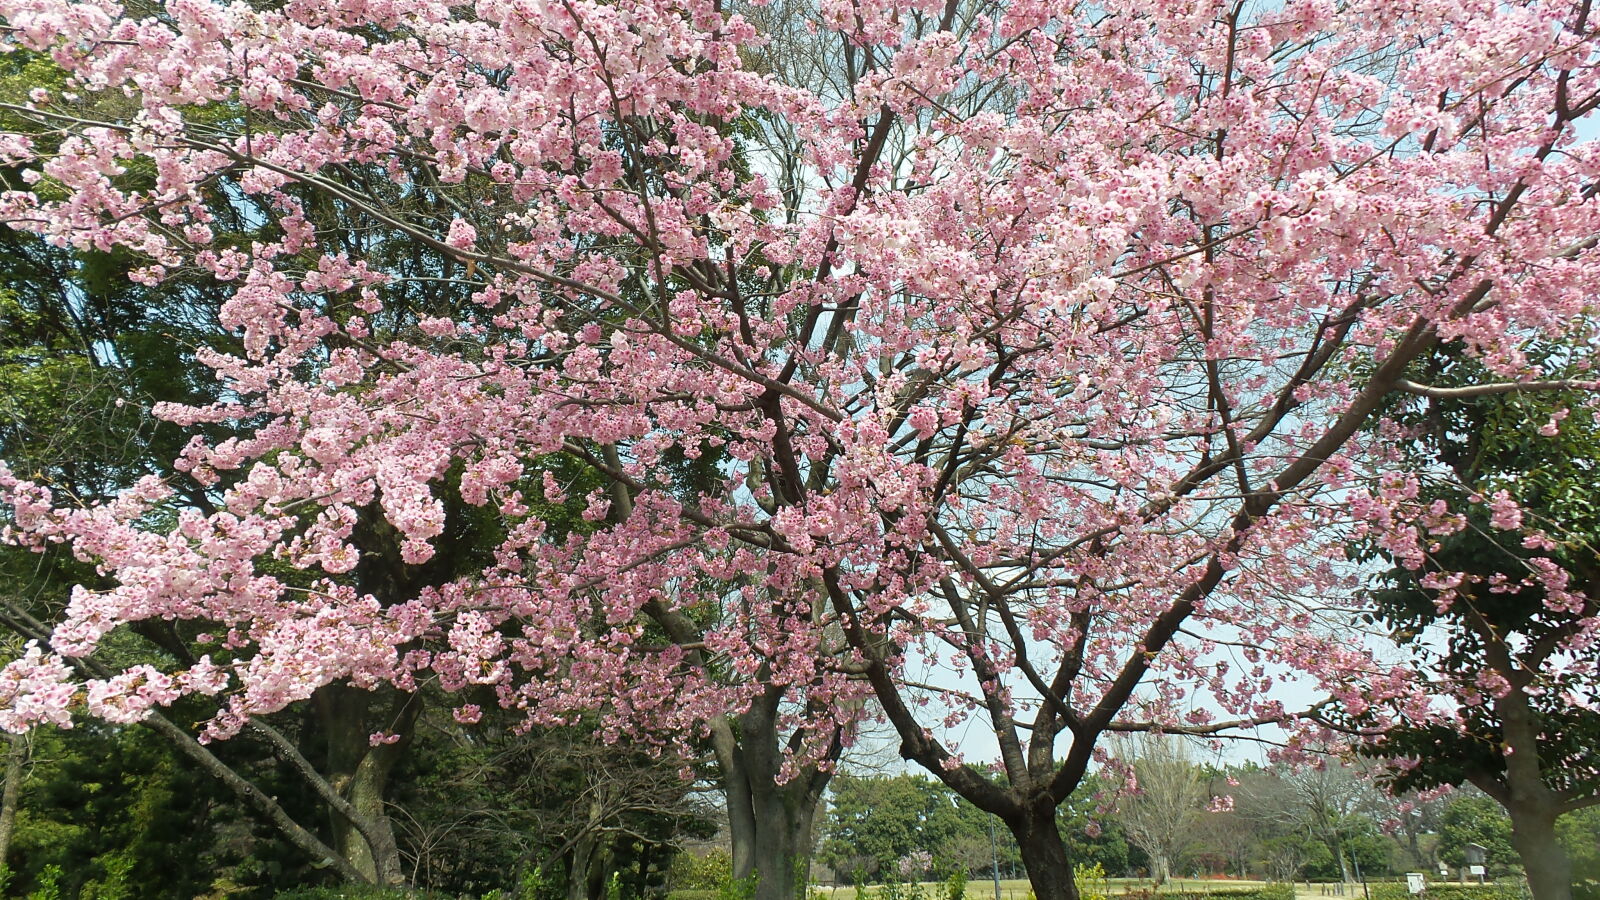 Samsung Galaxy Camera 2 sample photo. Cherry, blossoms, japan, nagoya photography